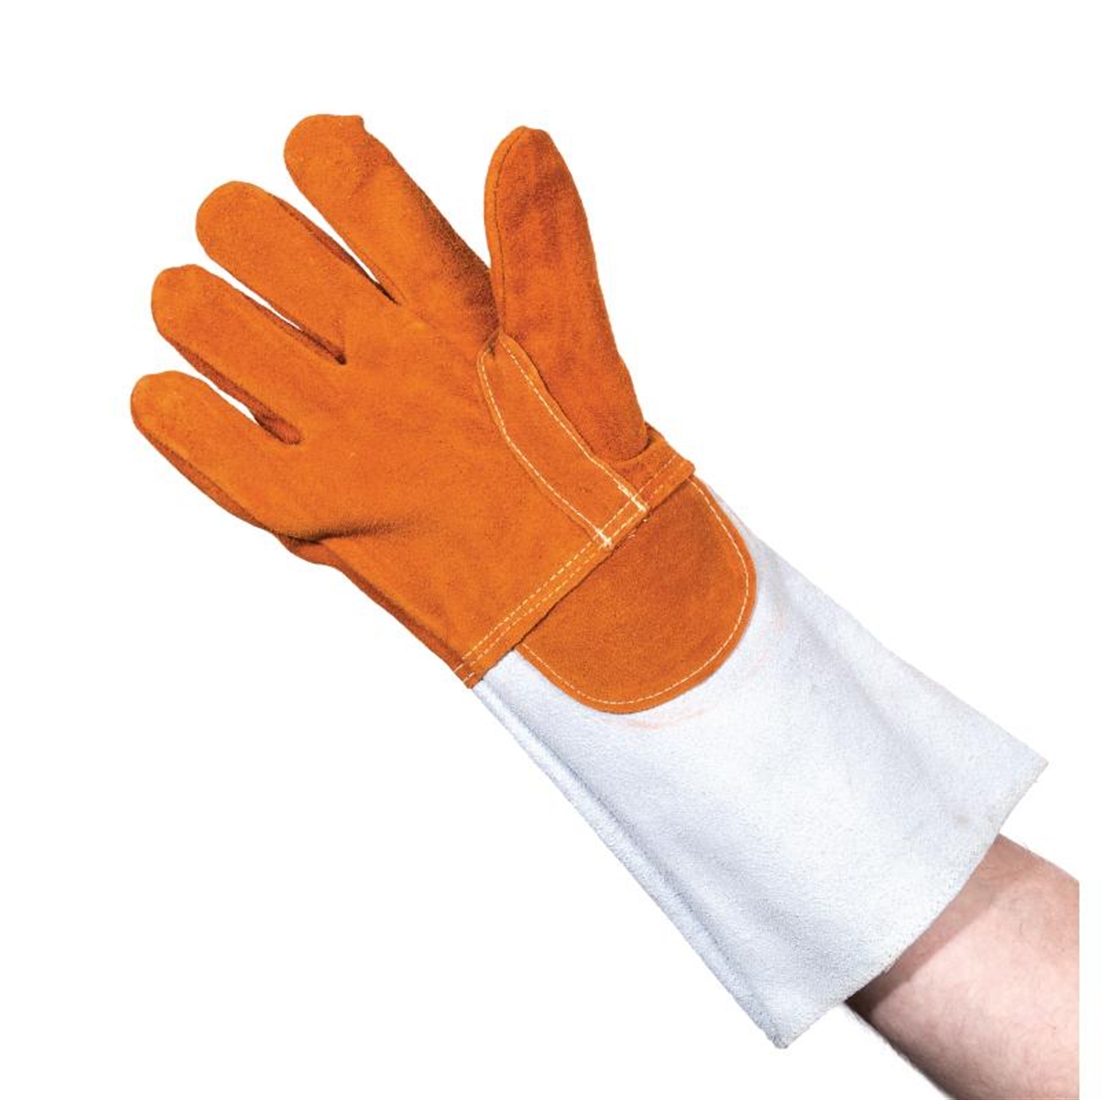 Matfer Baker Gloves